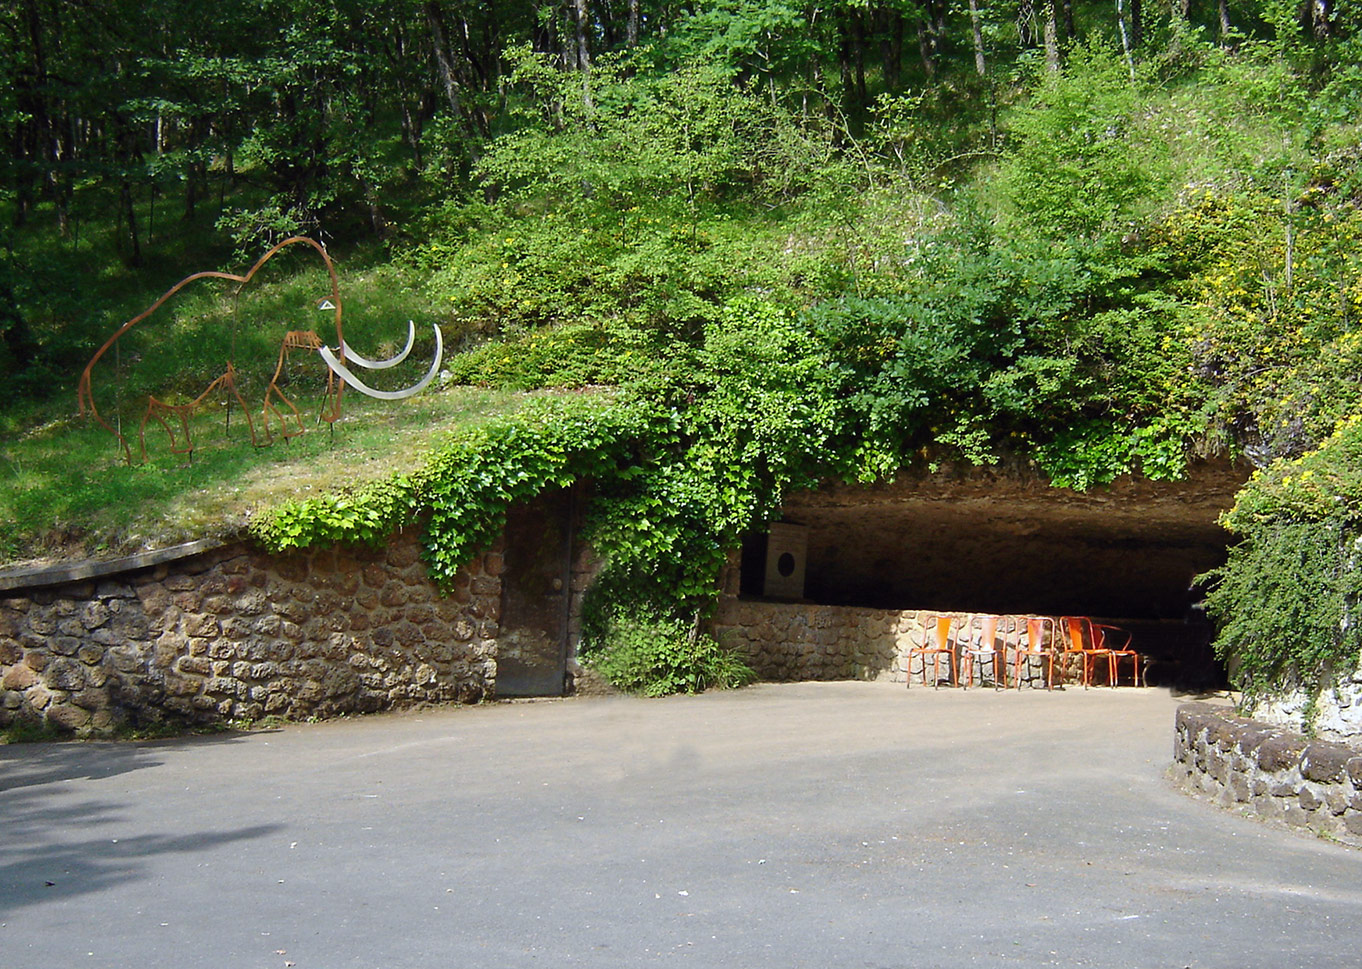 Entrée grotte de Rouffignac